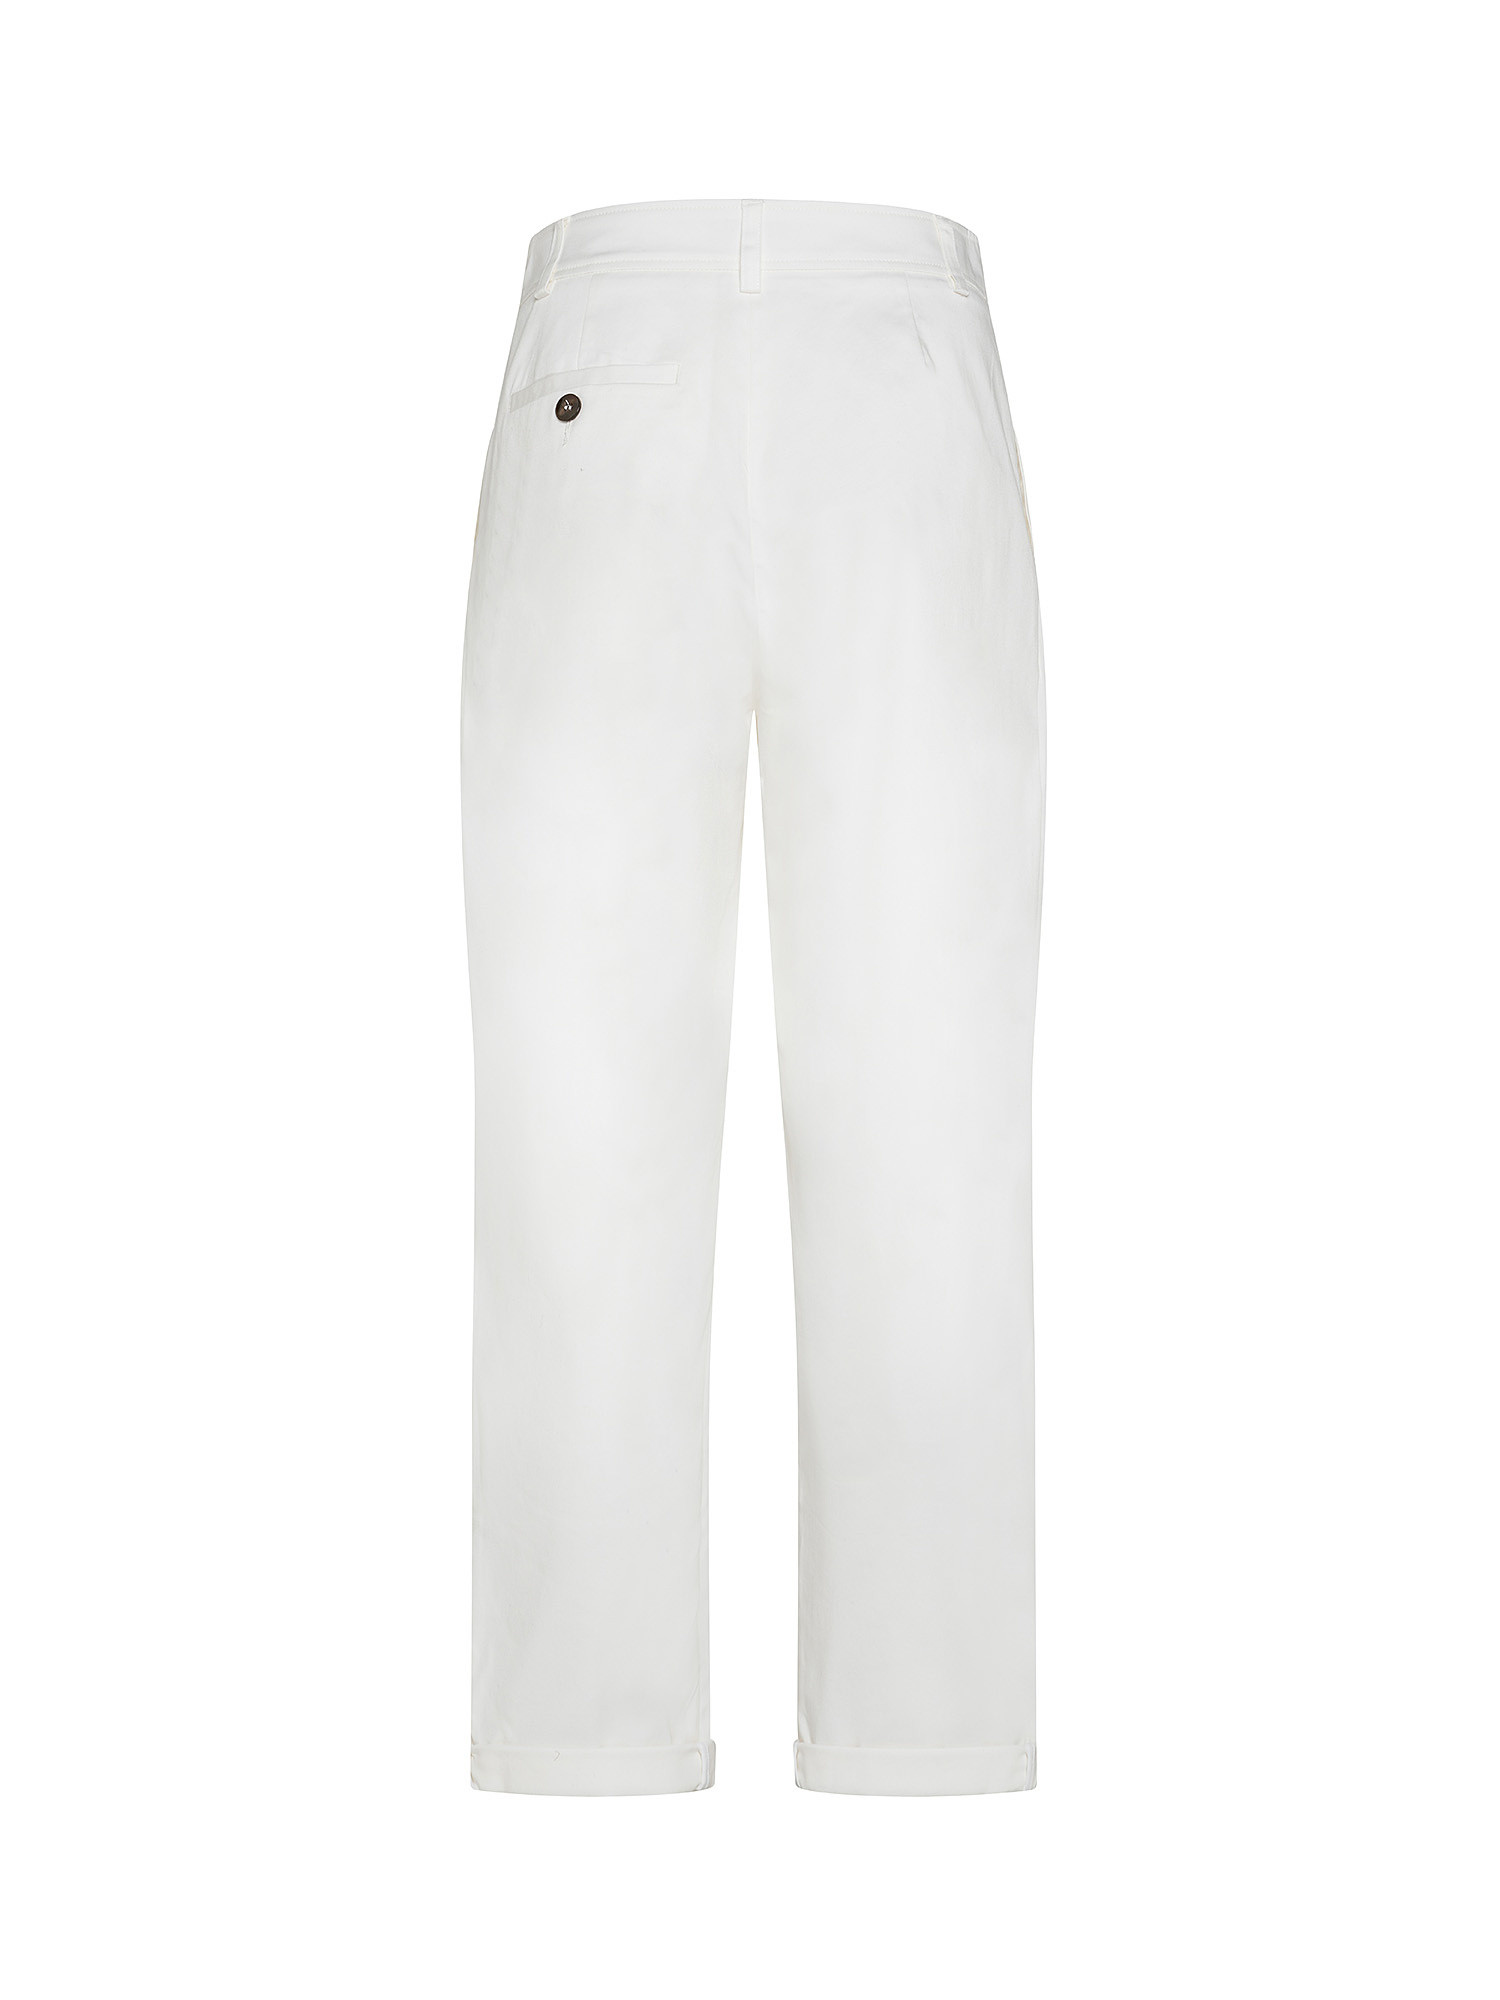 Pantaloni Anderson in gabardine di cotone elasticizzato, Bianco, large image number 1